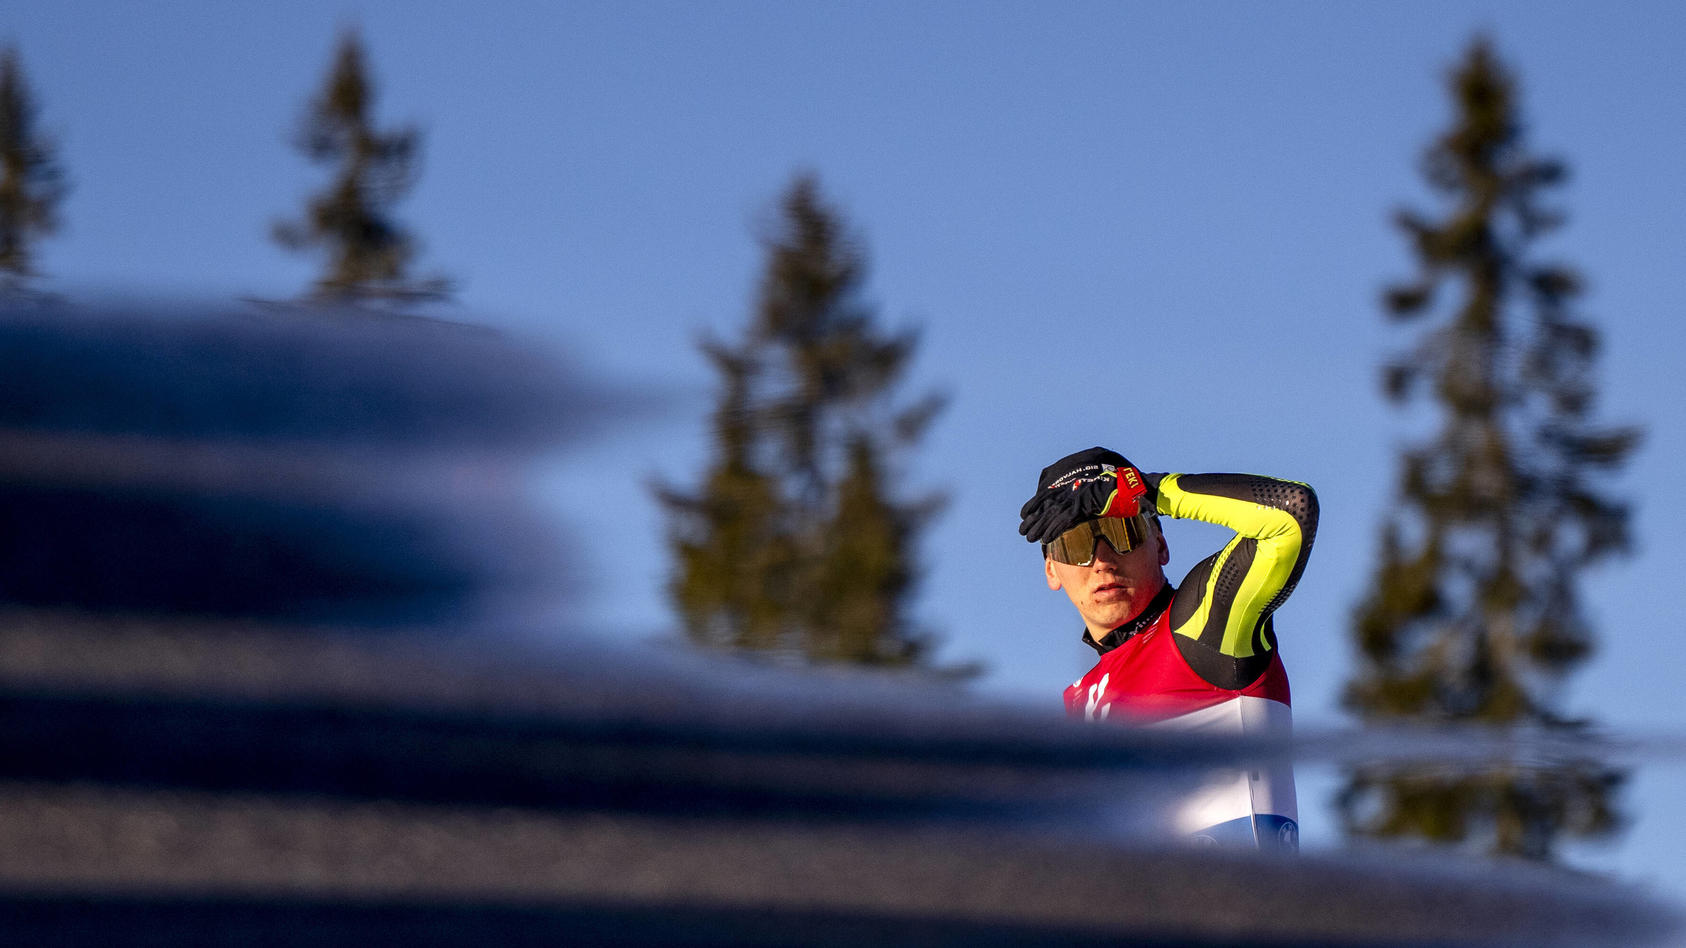 Polizei findet Leiche - Biathlon-Talent vermisst - nun scheint jede Hoffnung zerstört